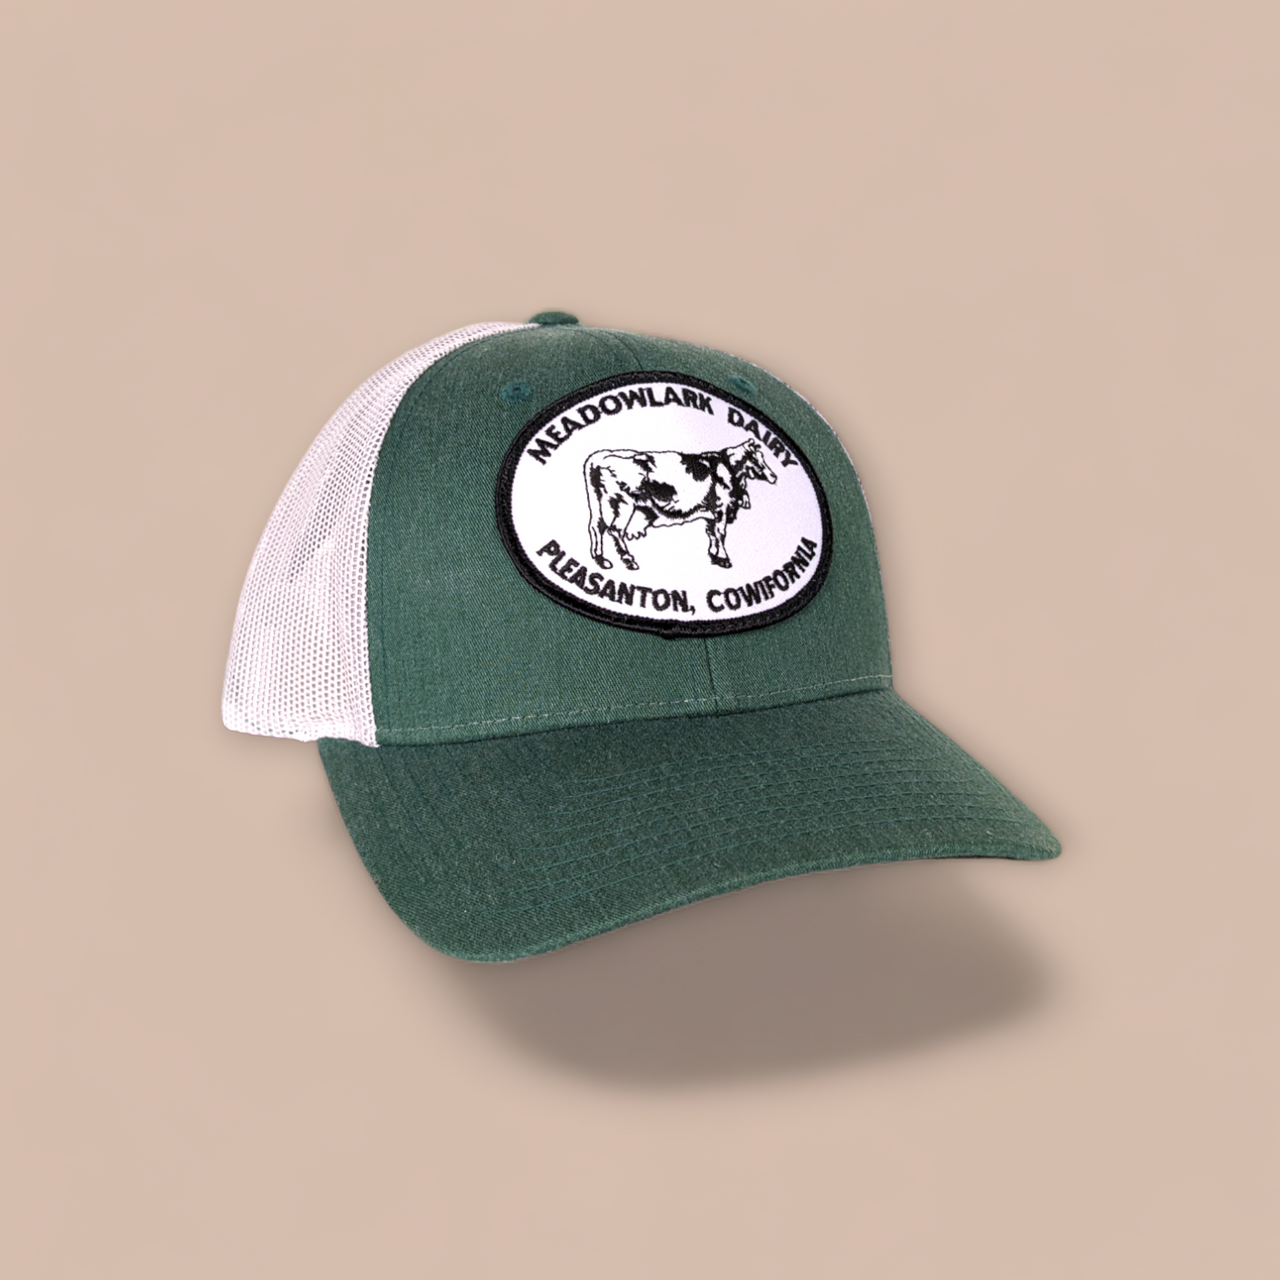 Meadowlark Dairy trucker hat (patch)